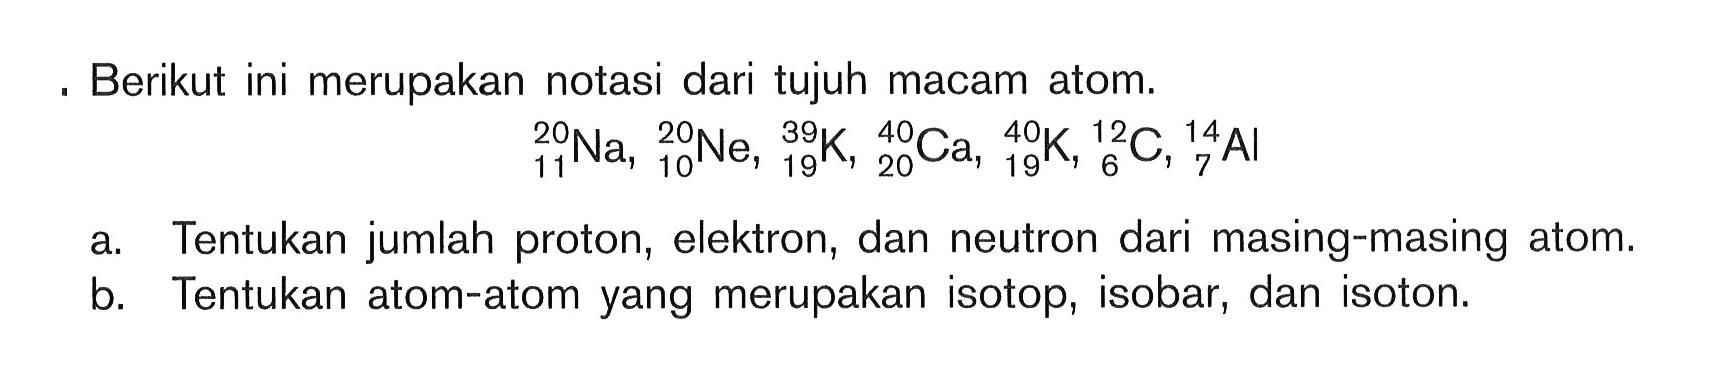 Berikut ini merupakan notasi dari tujuh macam atom.20 11 Na, 20 10 Ne, 39 19 K, 40 20 Ca, 40 19 K, 12 6 C, 14 7 Ala. Tentukan jumlah proton, elektron, dan neutron dari masing-masing atom.b. Tentukan atom-atom yang merupakan isotop, isobar, dan isoton.